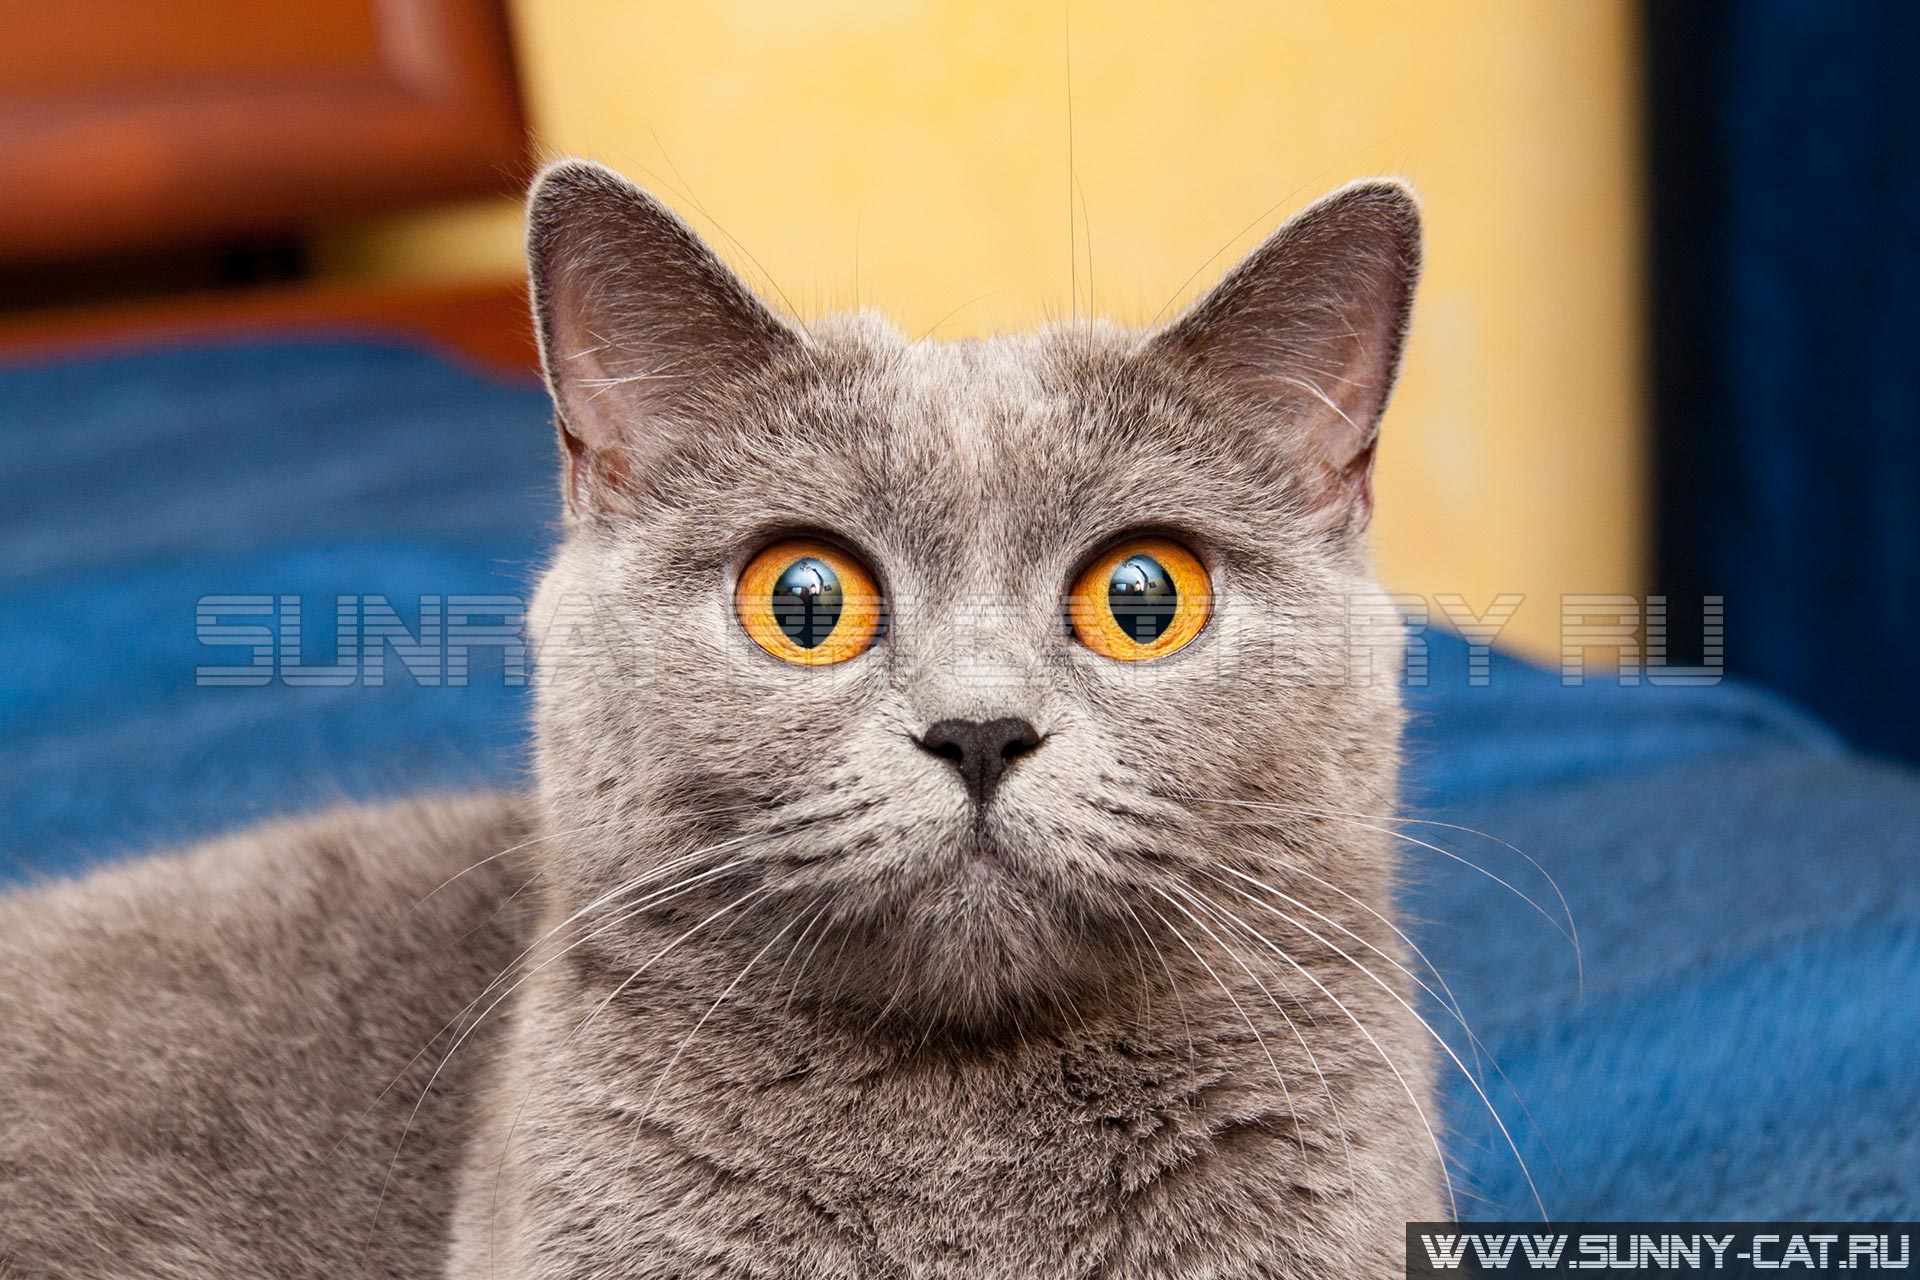 Очаровательная мордочка серой британской кошки с огромными оранжевыми глазами которая смотрит прямо в камеру крупным планом